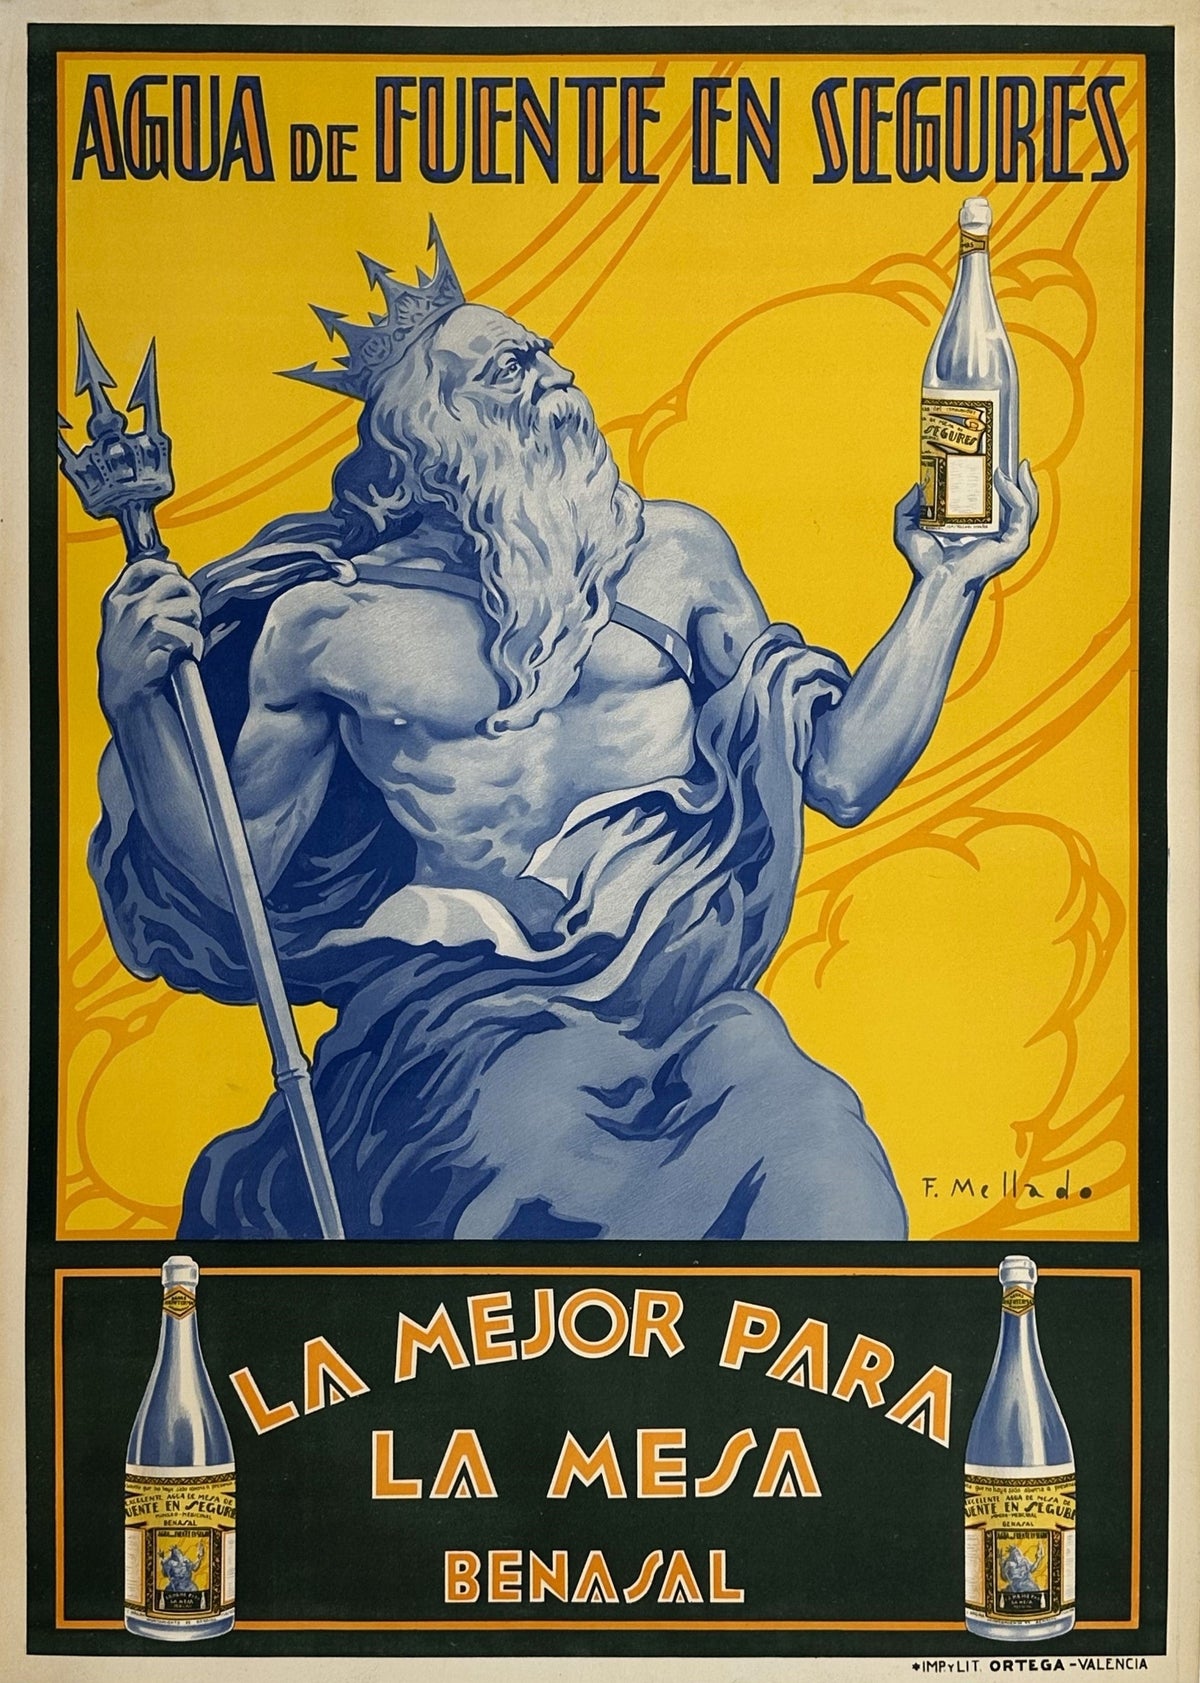 Agua de Fuente- Neptune - Authentic Vintage Poster